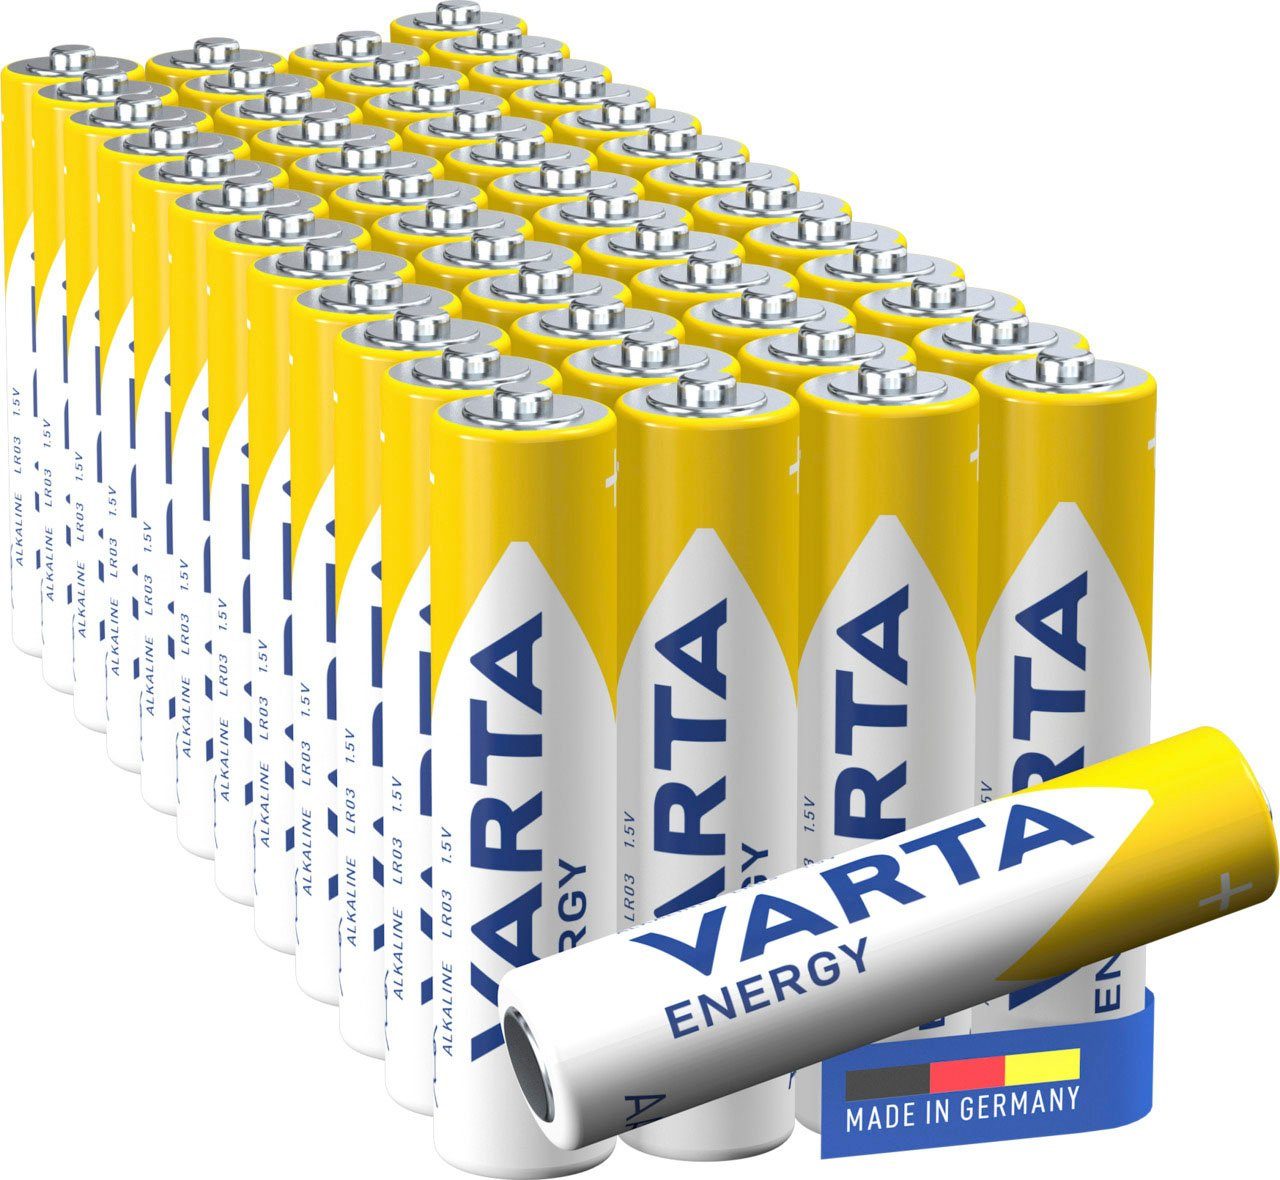 VARTA »Energy AAA Micro 50er Pack Alkaline Batterie - Made in Germany -  ideal für Spielzeug, Taschenlampen und andere batteriebetriebene Geräte«  Batterie, LR03 online kaufen | OTTO